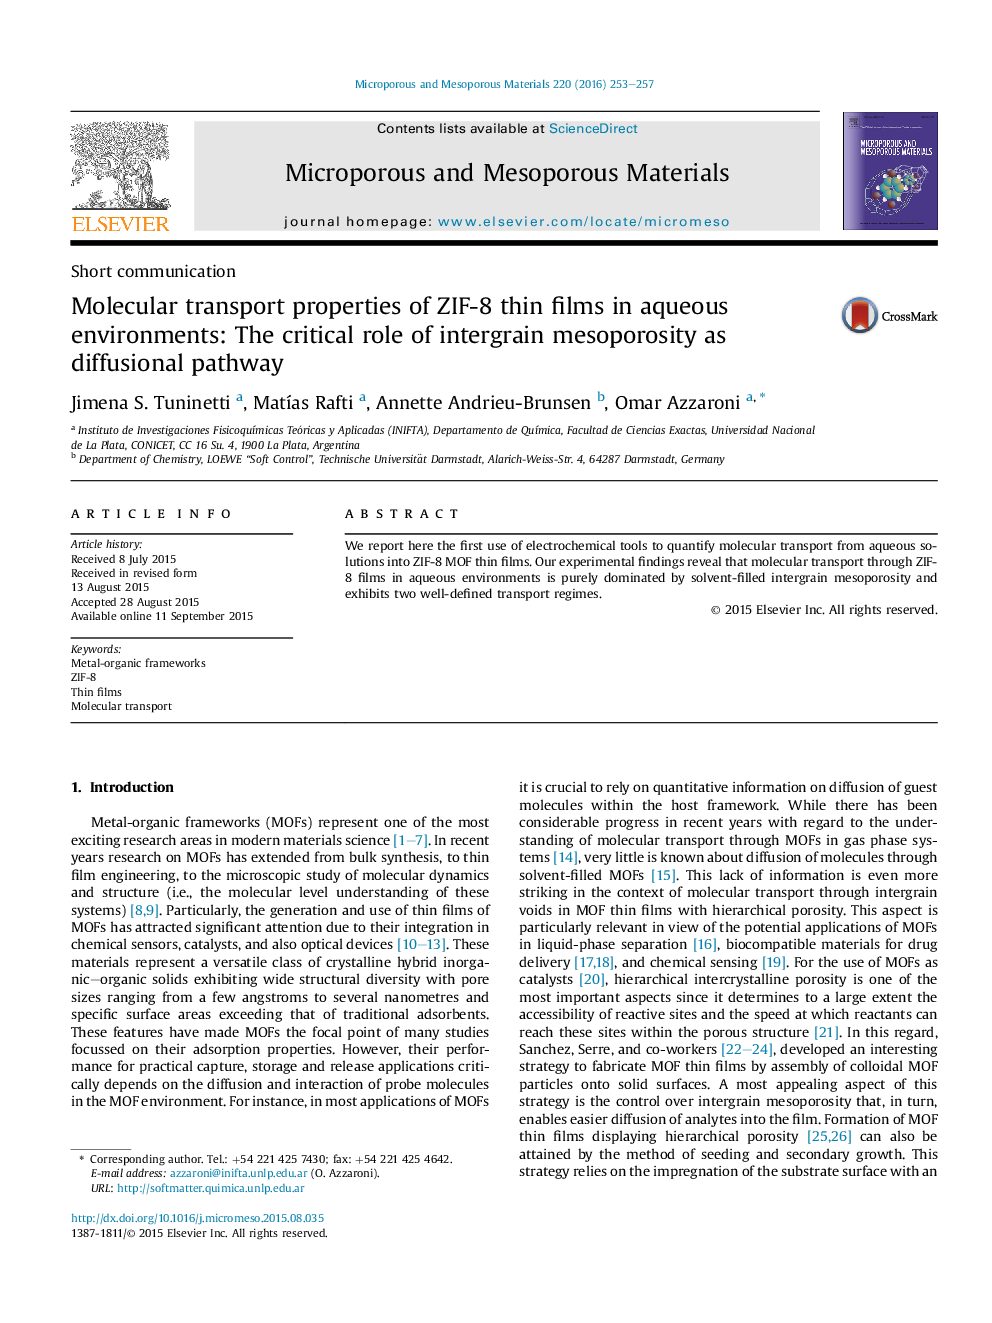 خواص حمل و نقل مولکولی ZIF-8 لایه های نازک در محیط های آبی: نقش حیاتی mesoporosity intergrain به عنوان مسیر نفوذی